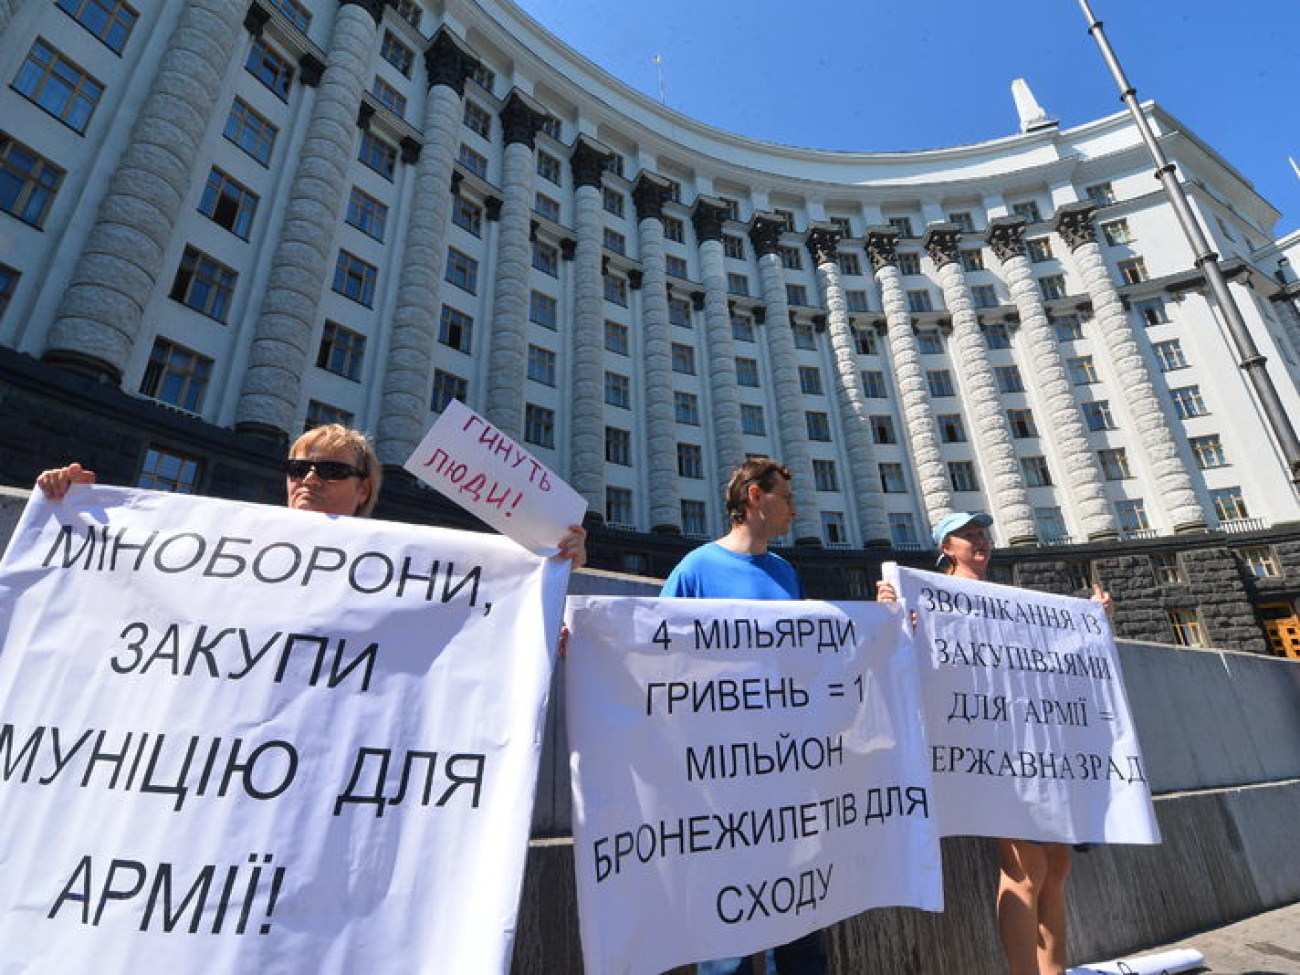 Перевозчики и активисты требуют у министров прекратить коррупцию и бесчинства, 10 июня 2014г.